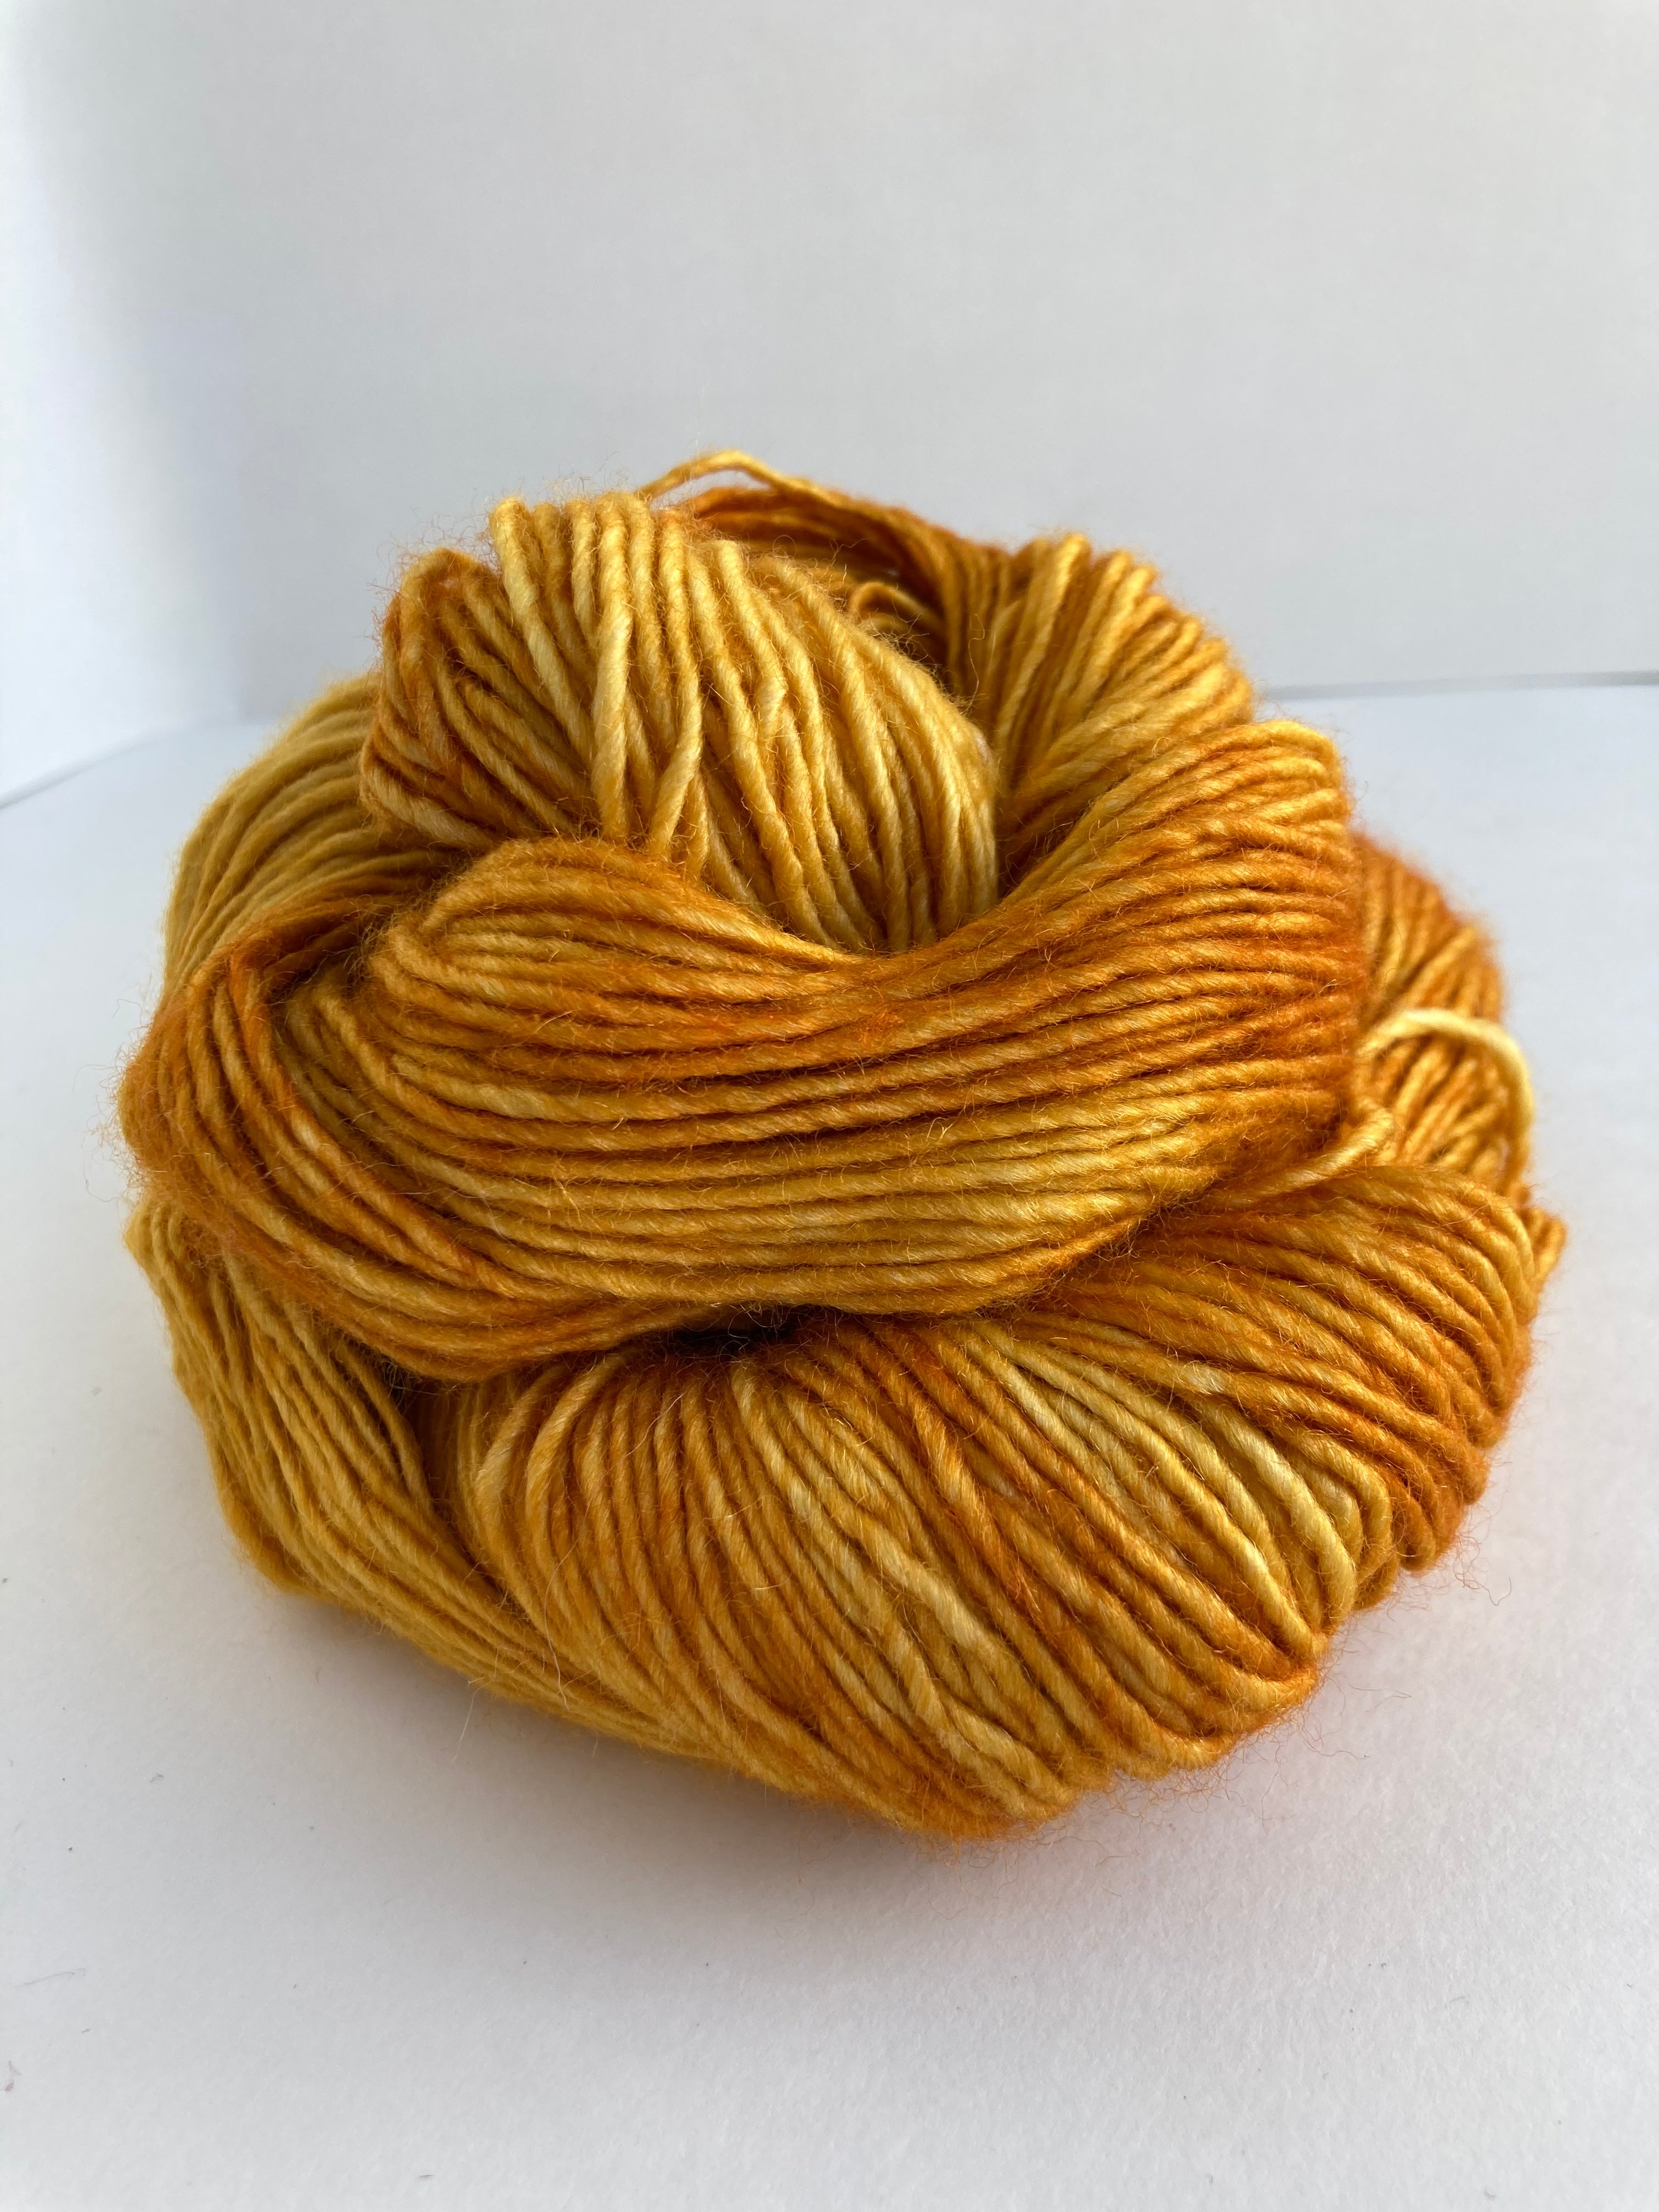 Malabrigo Silky Merino yarn